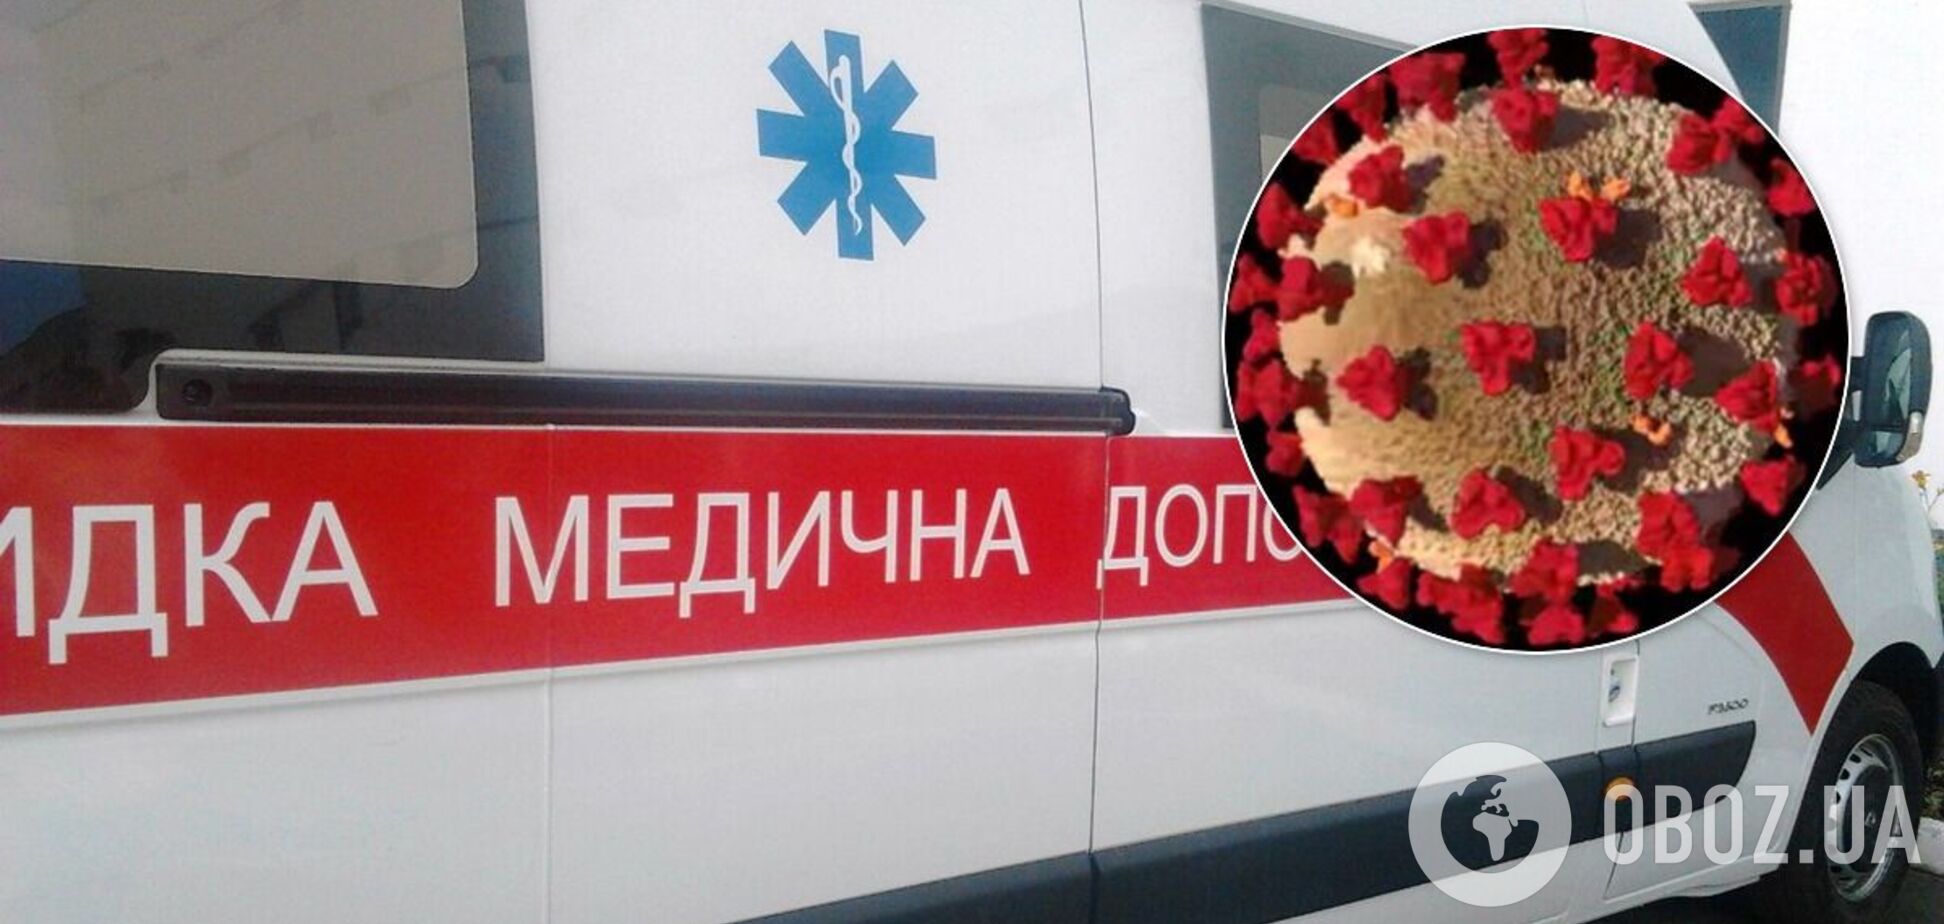 Появилось видео из переполненной больницы Одессы: скорые постоянно везут больных COVID-19